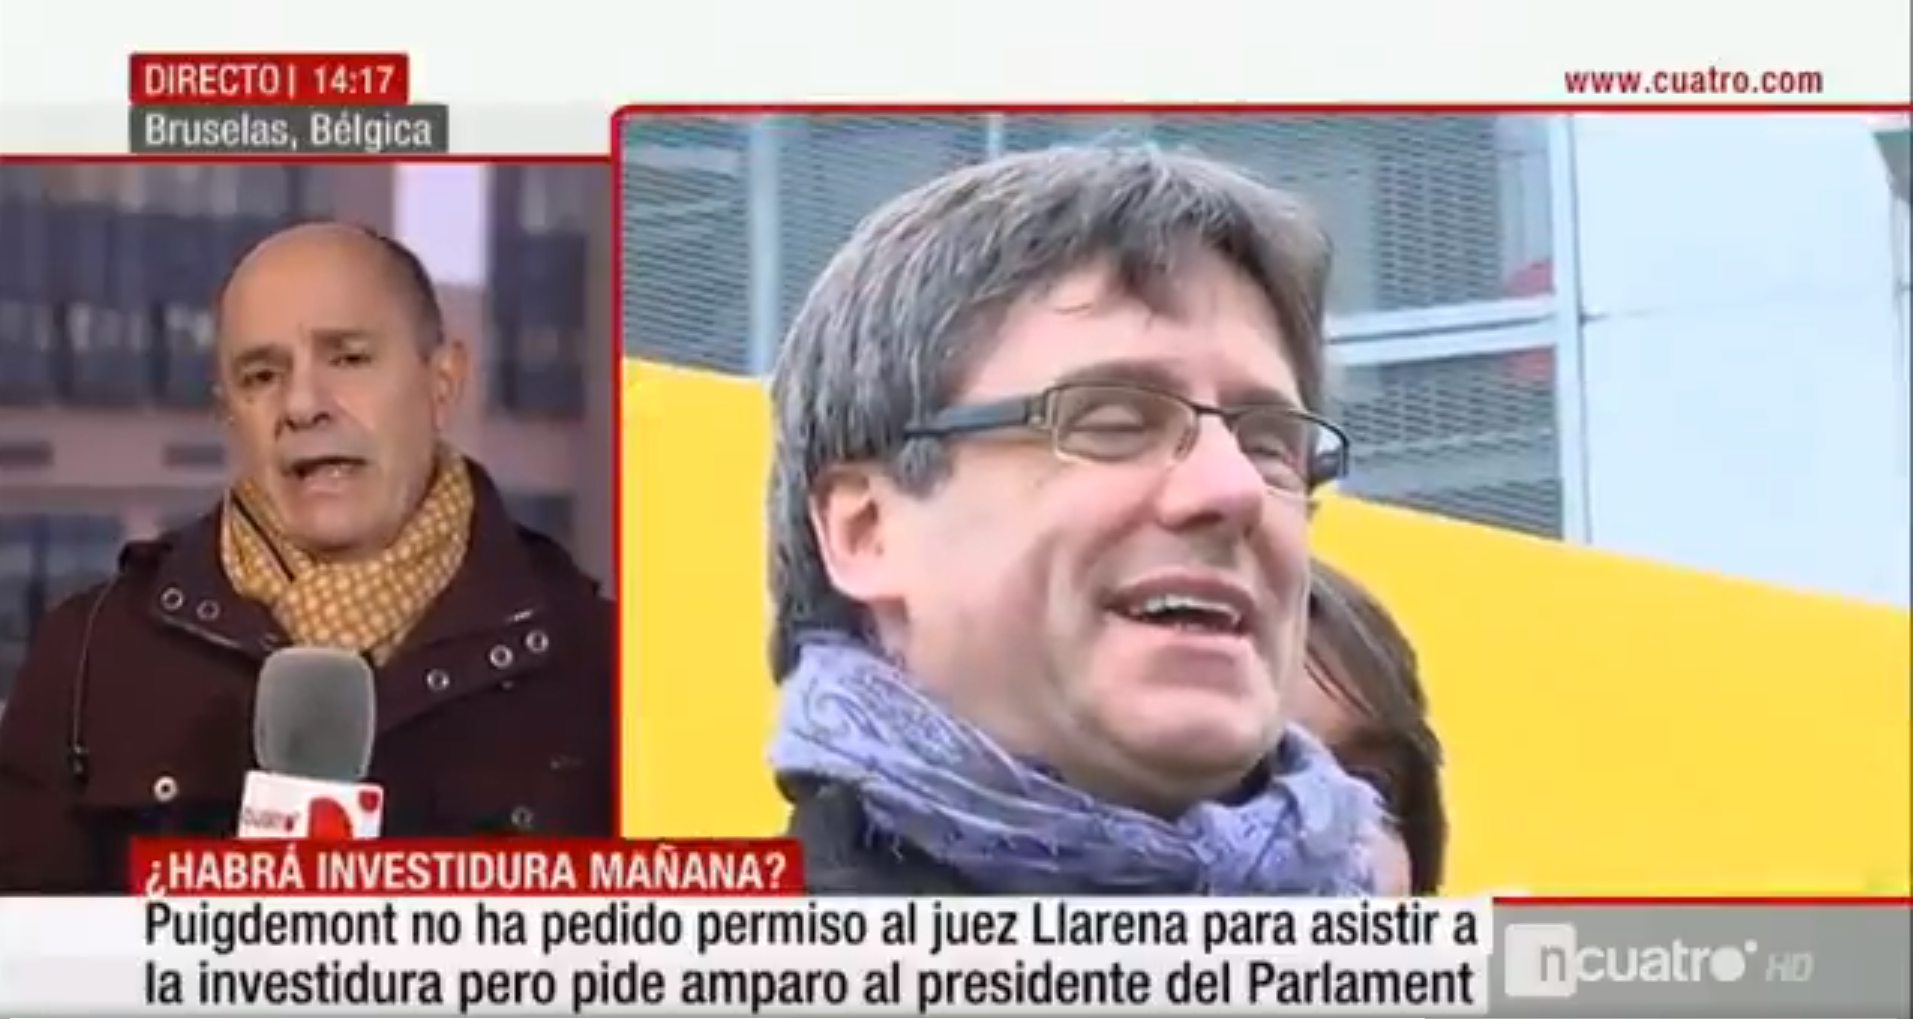 La pifia de Cuatro: referirse a Puigdemont como presidente de la República